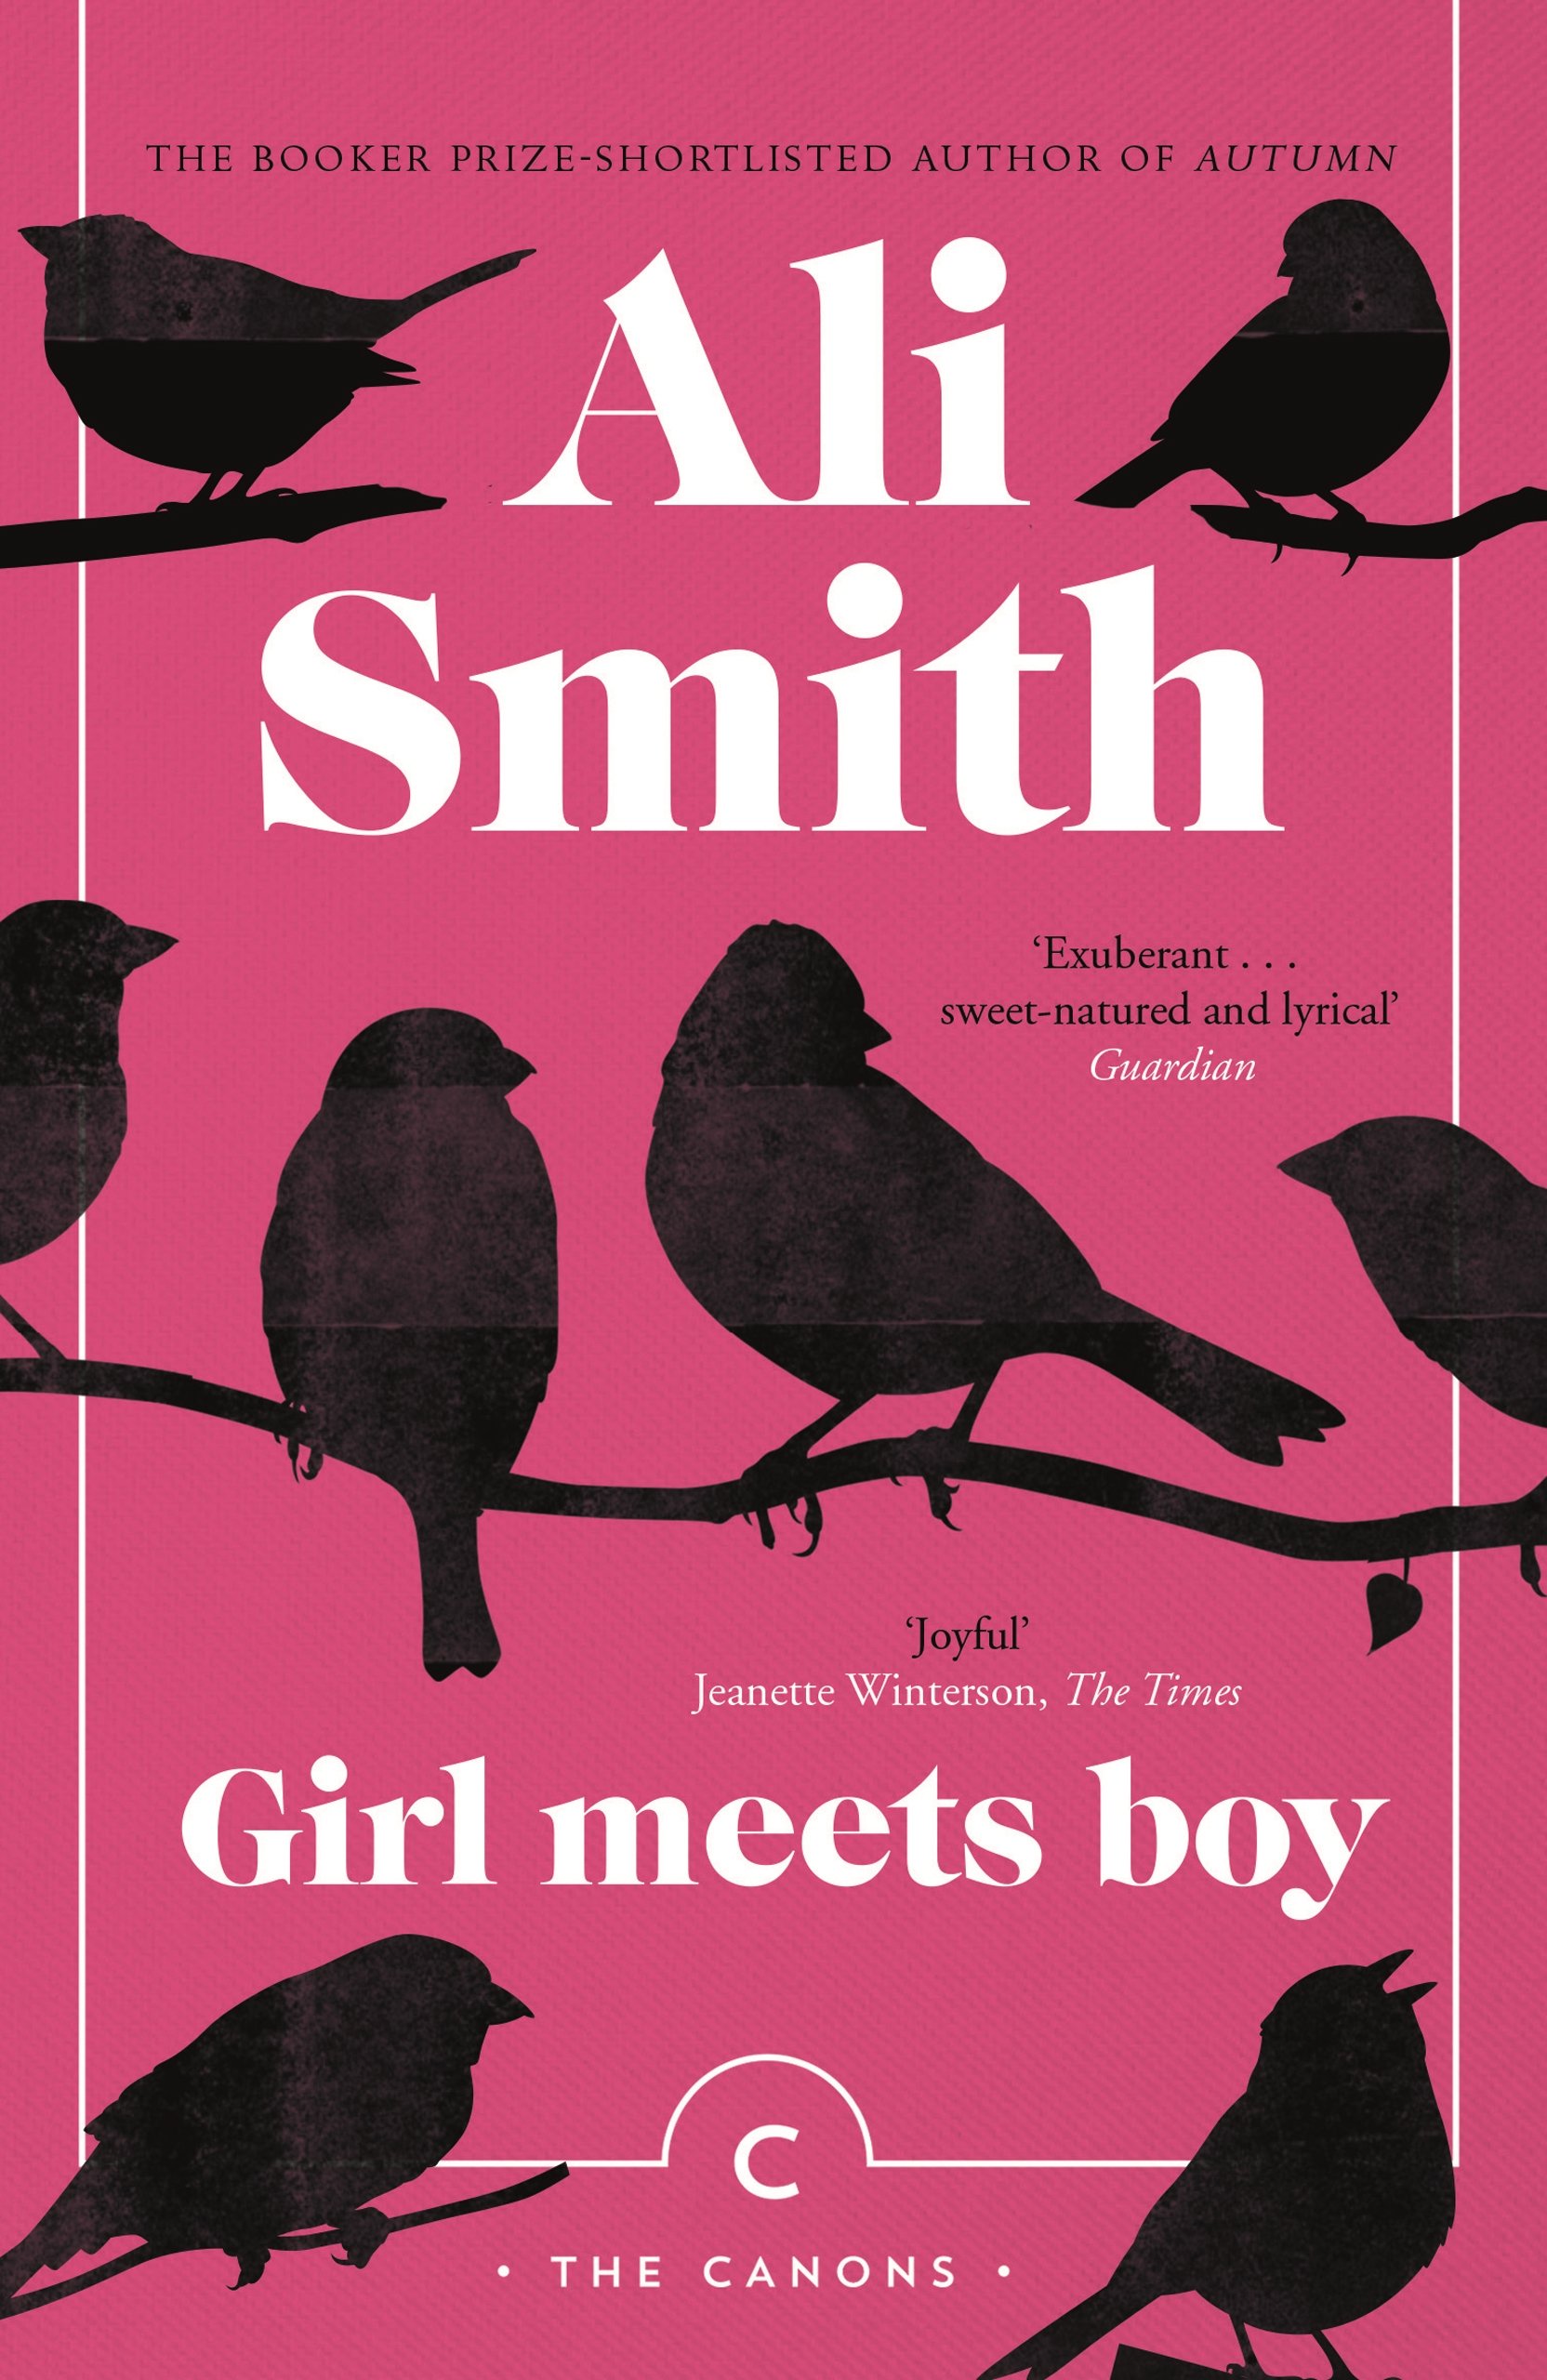 Girl Meets Boy | Ali Smith